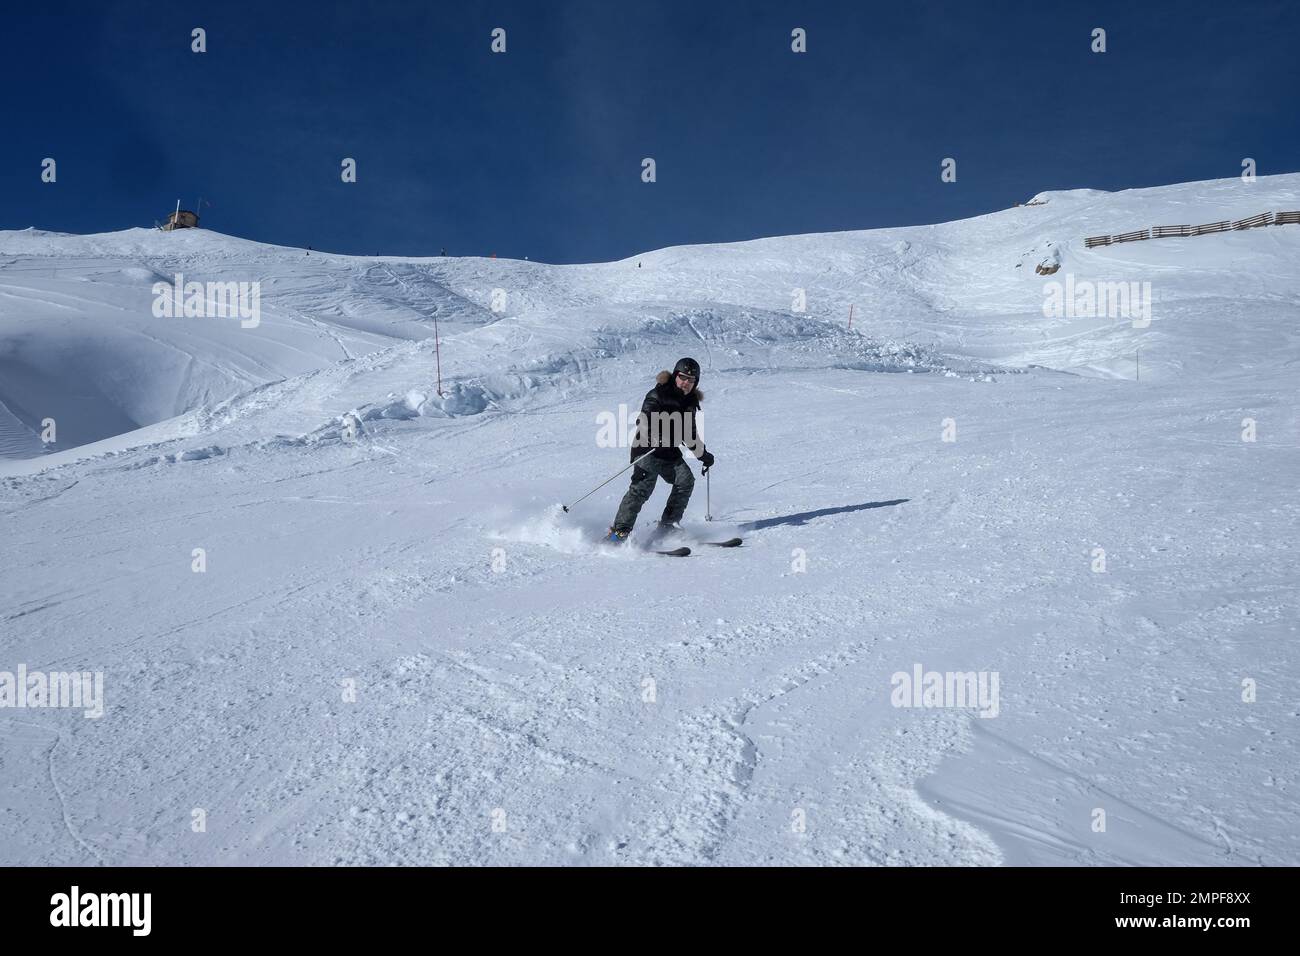 Michael Bunel / Le Pictorium - Skifahren in den Alpen - 3/1/2016 - Savoie / Frankreich / La plagne - Illustration Skiurlaub. 23. Januar 2023 La plagn Stockfoto